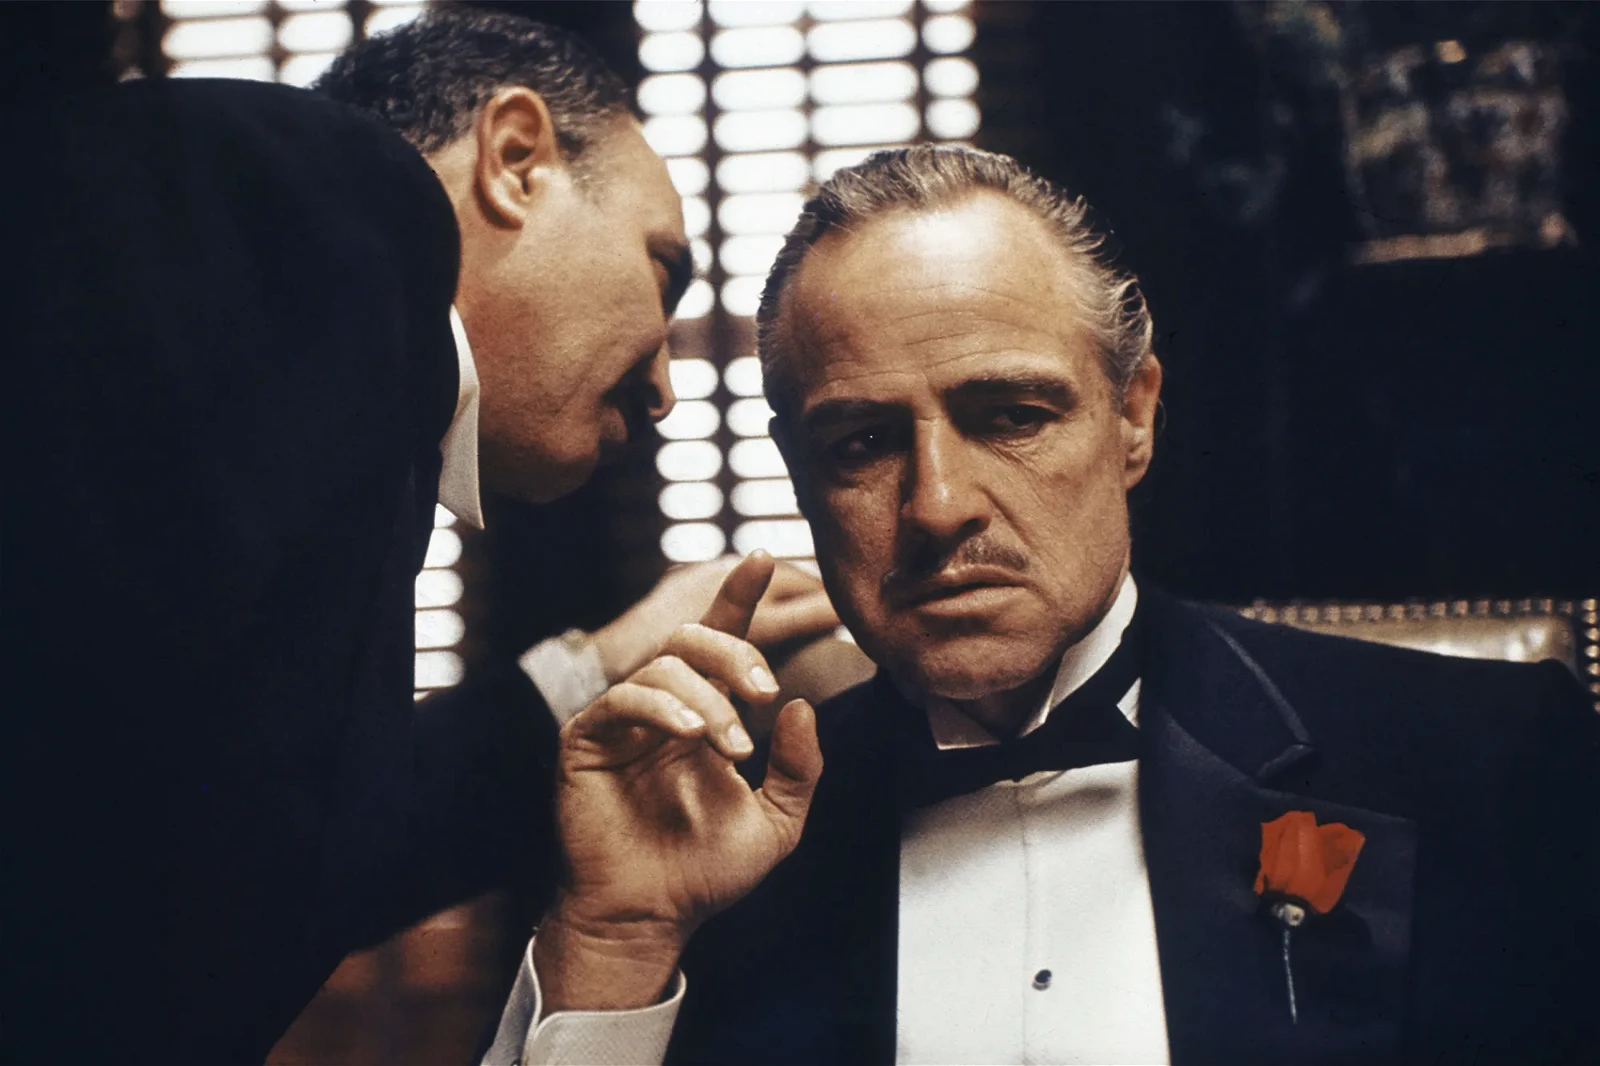 Marlon Brando as Vito Corleone in a still from The Godfather 